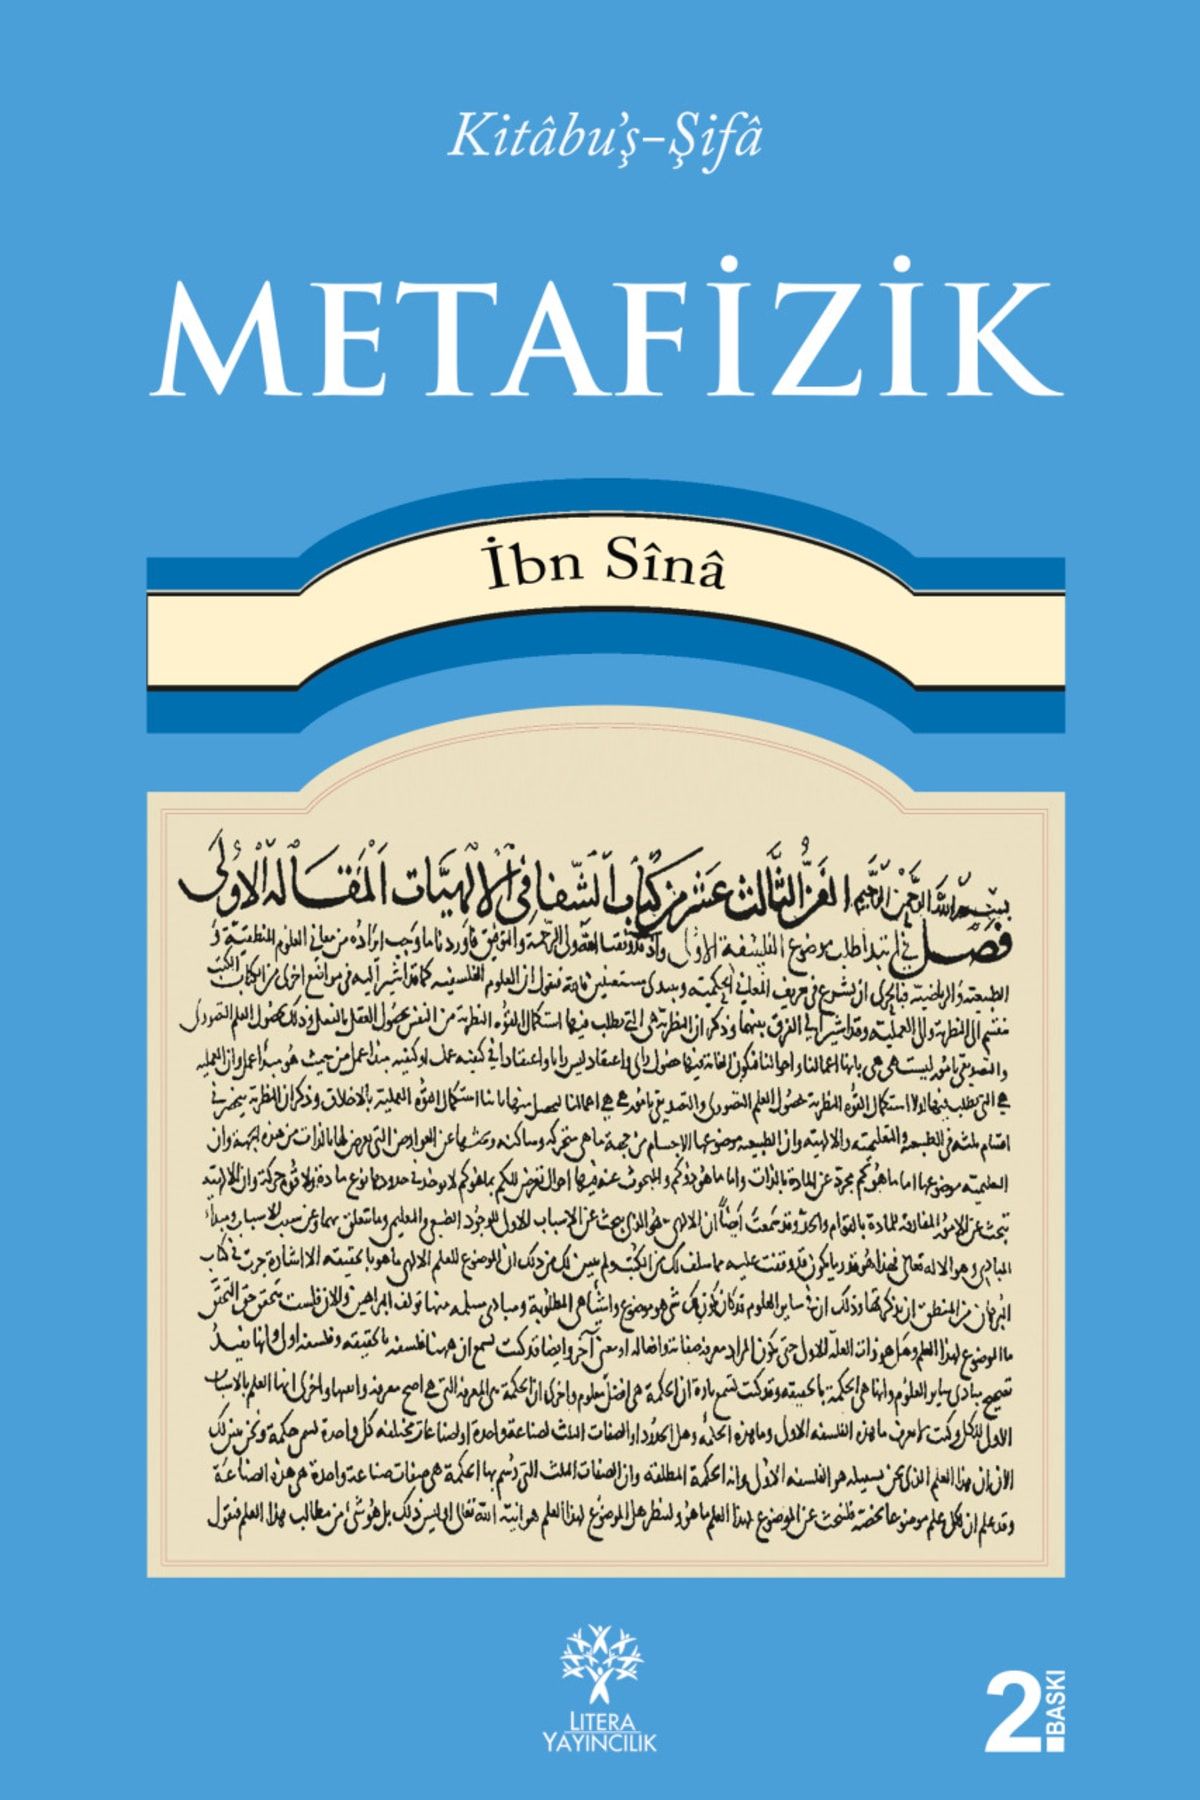 Litera Yayıncılık İbni Sina Metafizik.